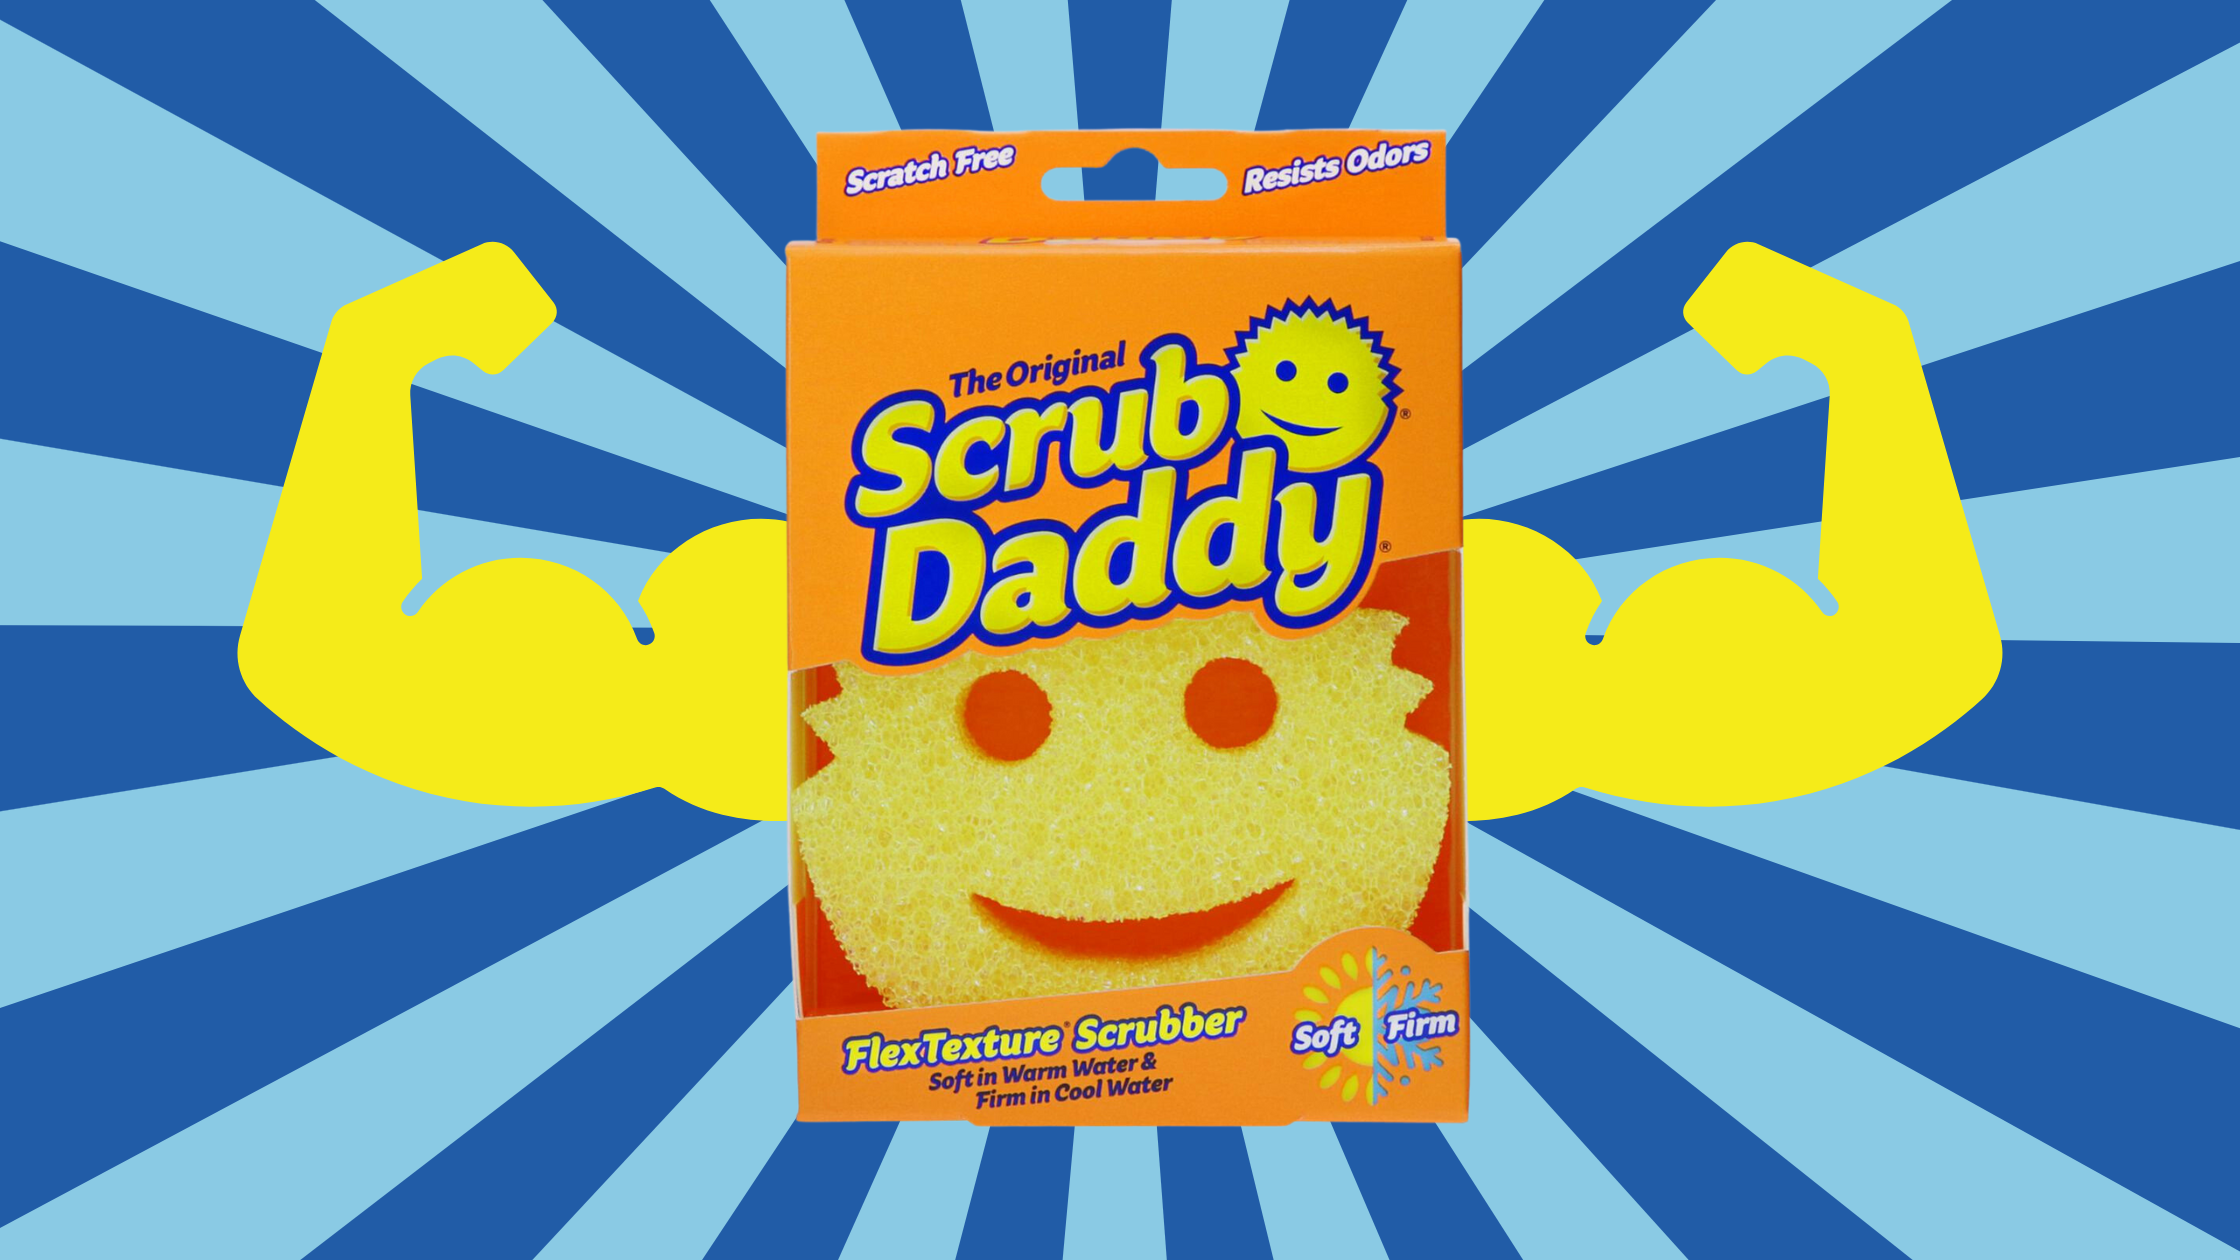  Scrub Daddy Large Sponge - Big Daddy - Scratch-Free